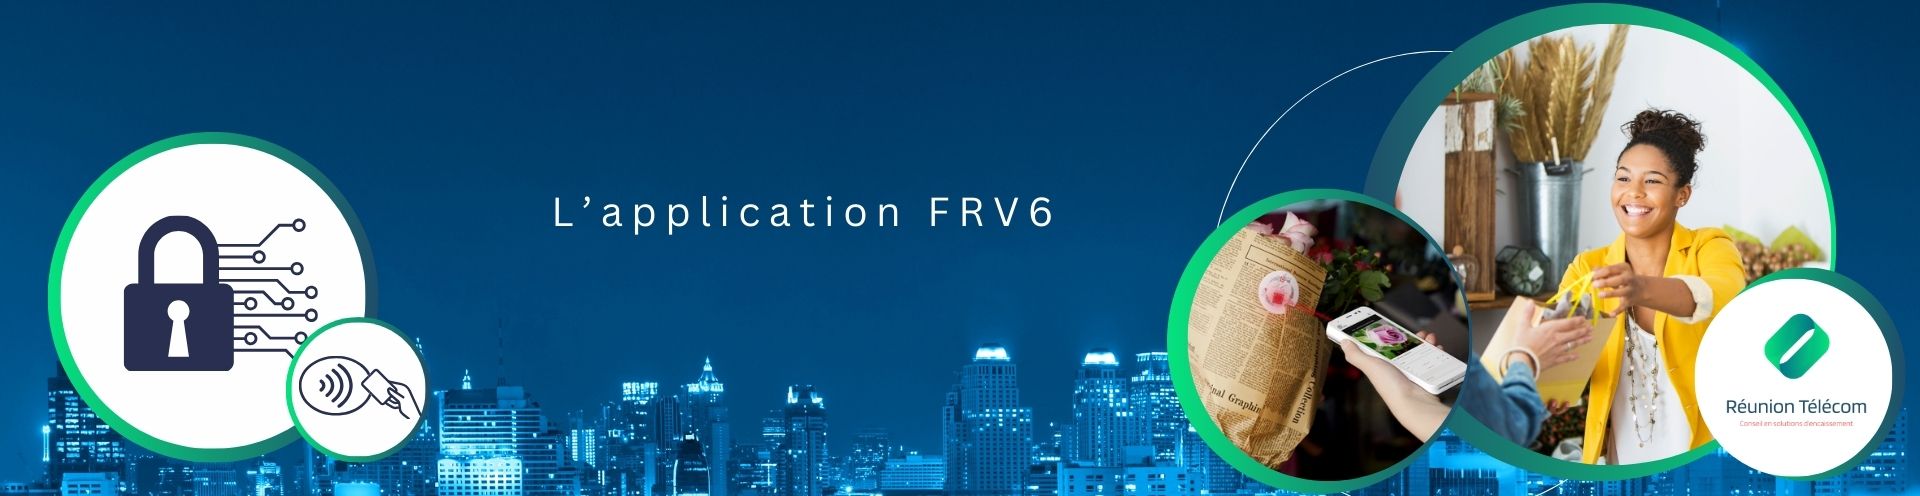 FRV6 Impacts entreprise et expérience client